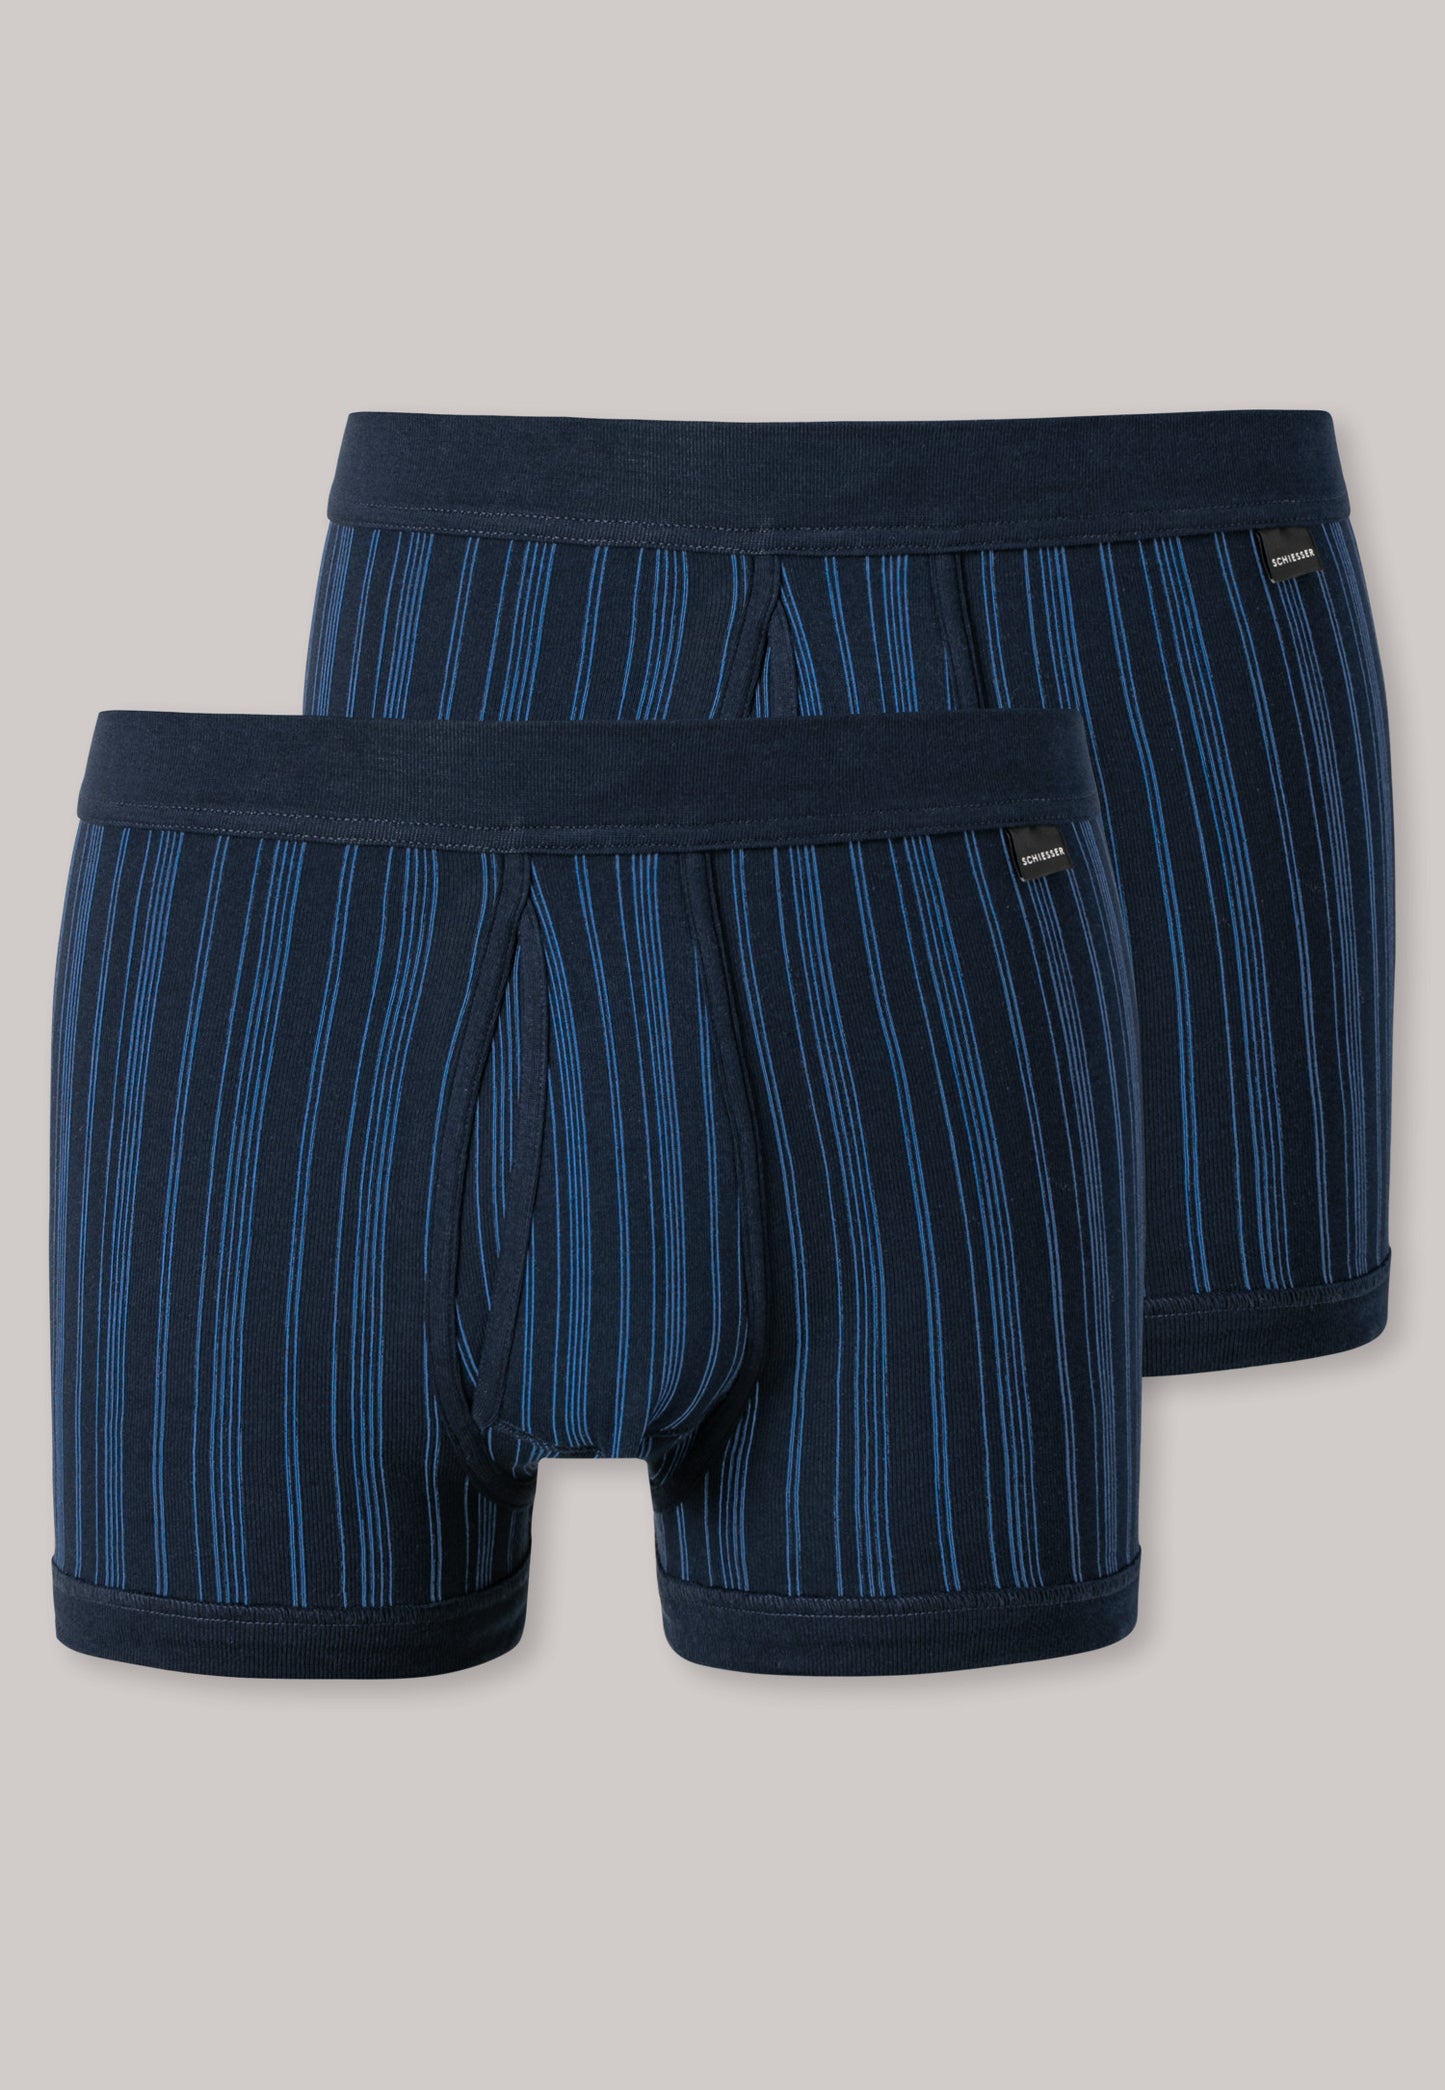 Pantalon court tissu côtelé lot de 2 avec ouverture bleu foncé rayé - Original Classics